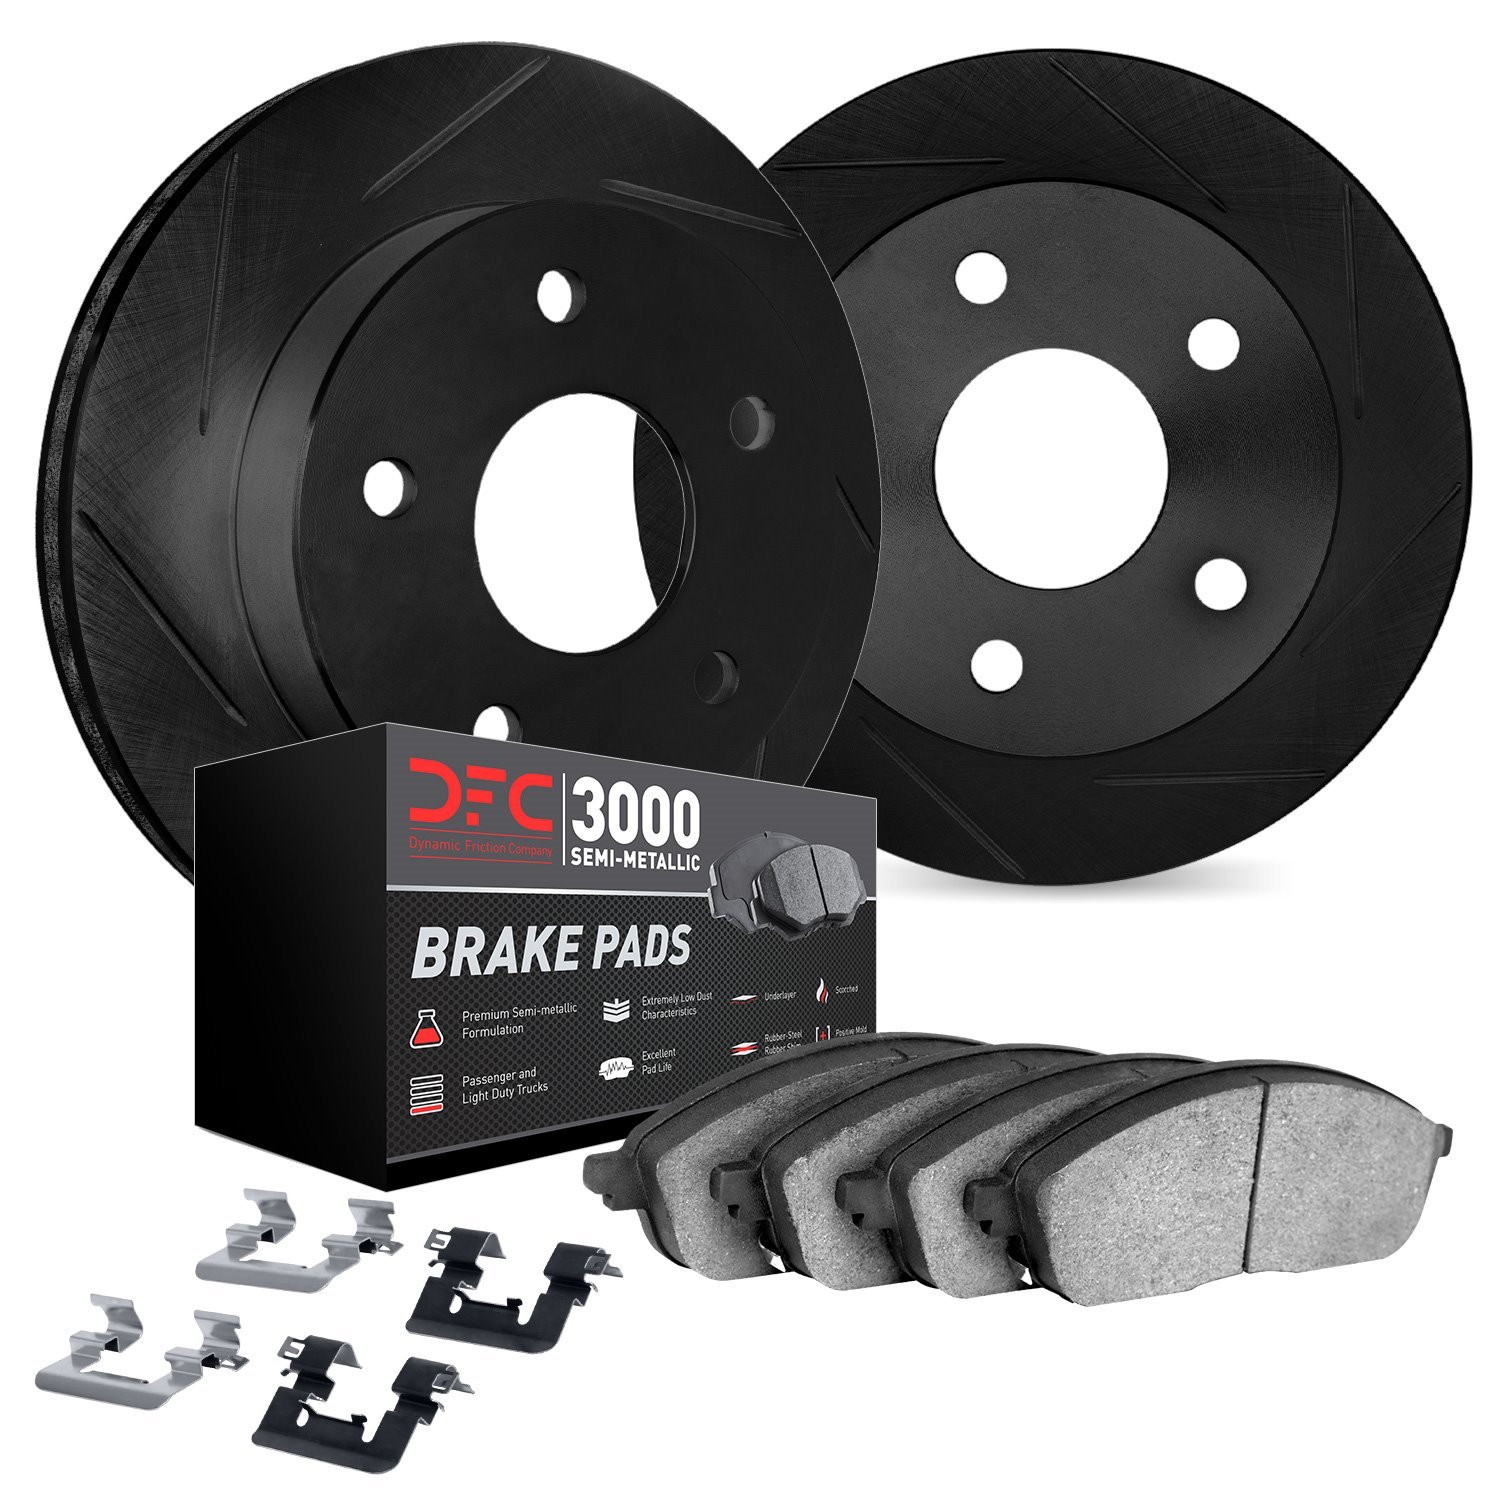 3112-63134 Slotted Brake Rotors with 3000-Series Semi-Metallic Brake Pads Kit & Hardware [Black], 2013-2019 Mercedes-Benz, Posit